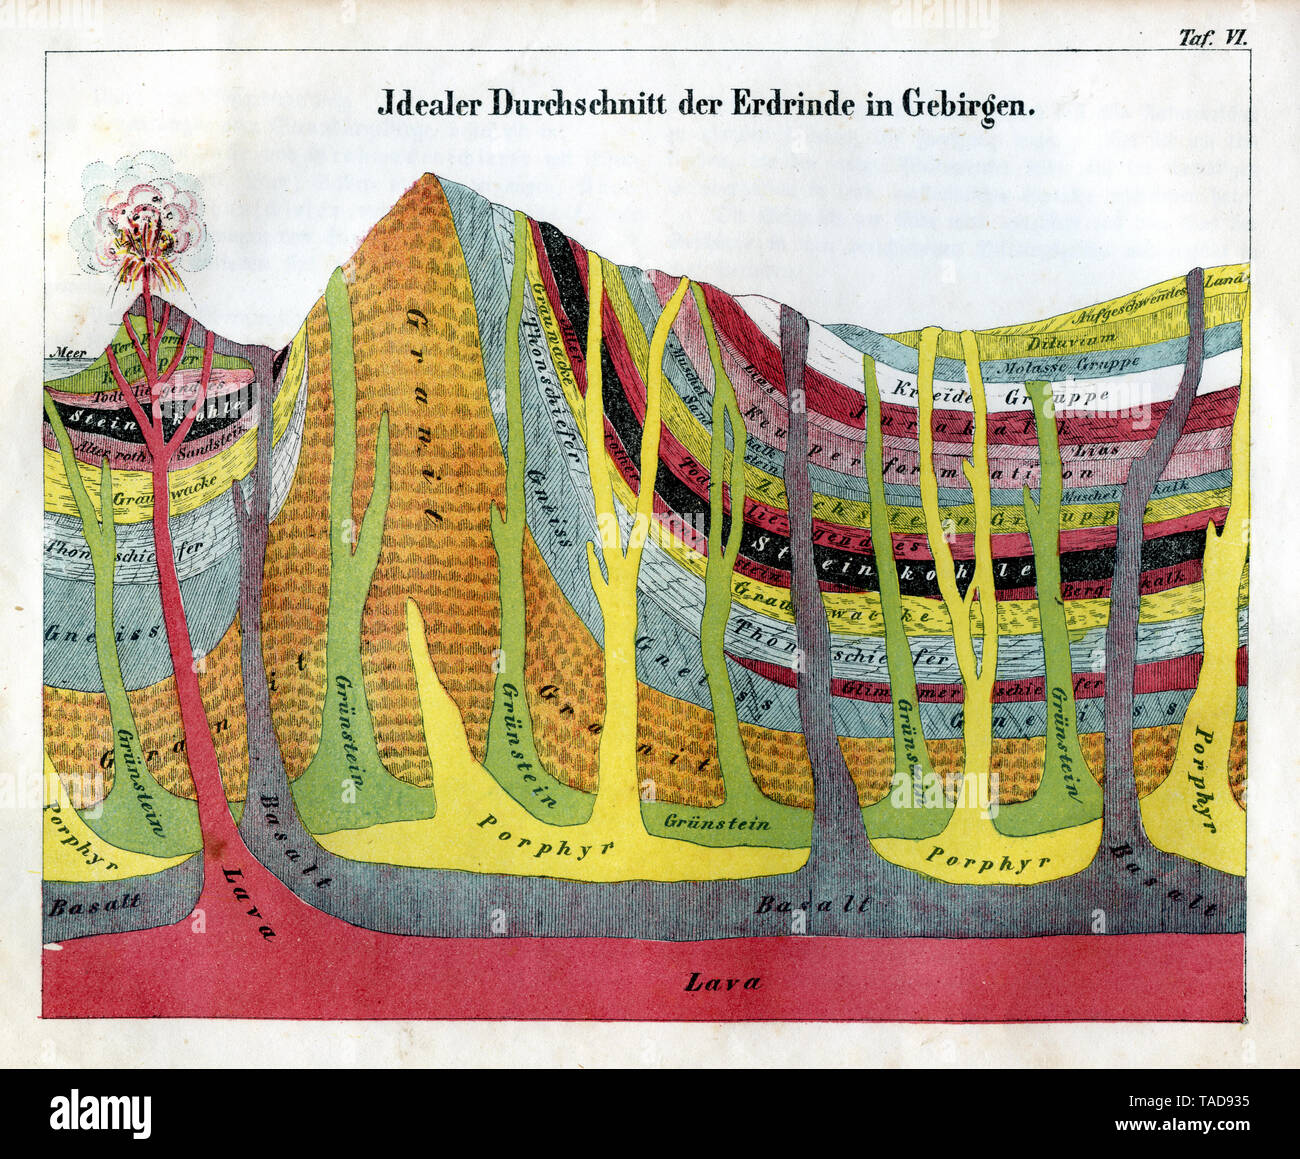 L'article idéal de l'écorce terrestre dans les montagnes , F G L'évolution Gessner (livre d'histoire, 1854) Banque D'Images